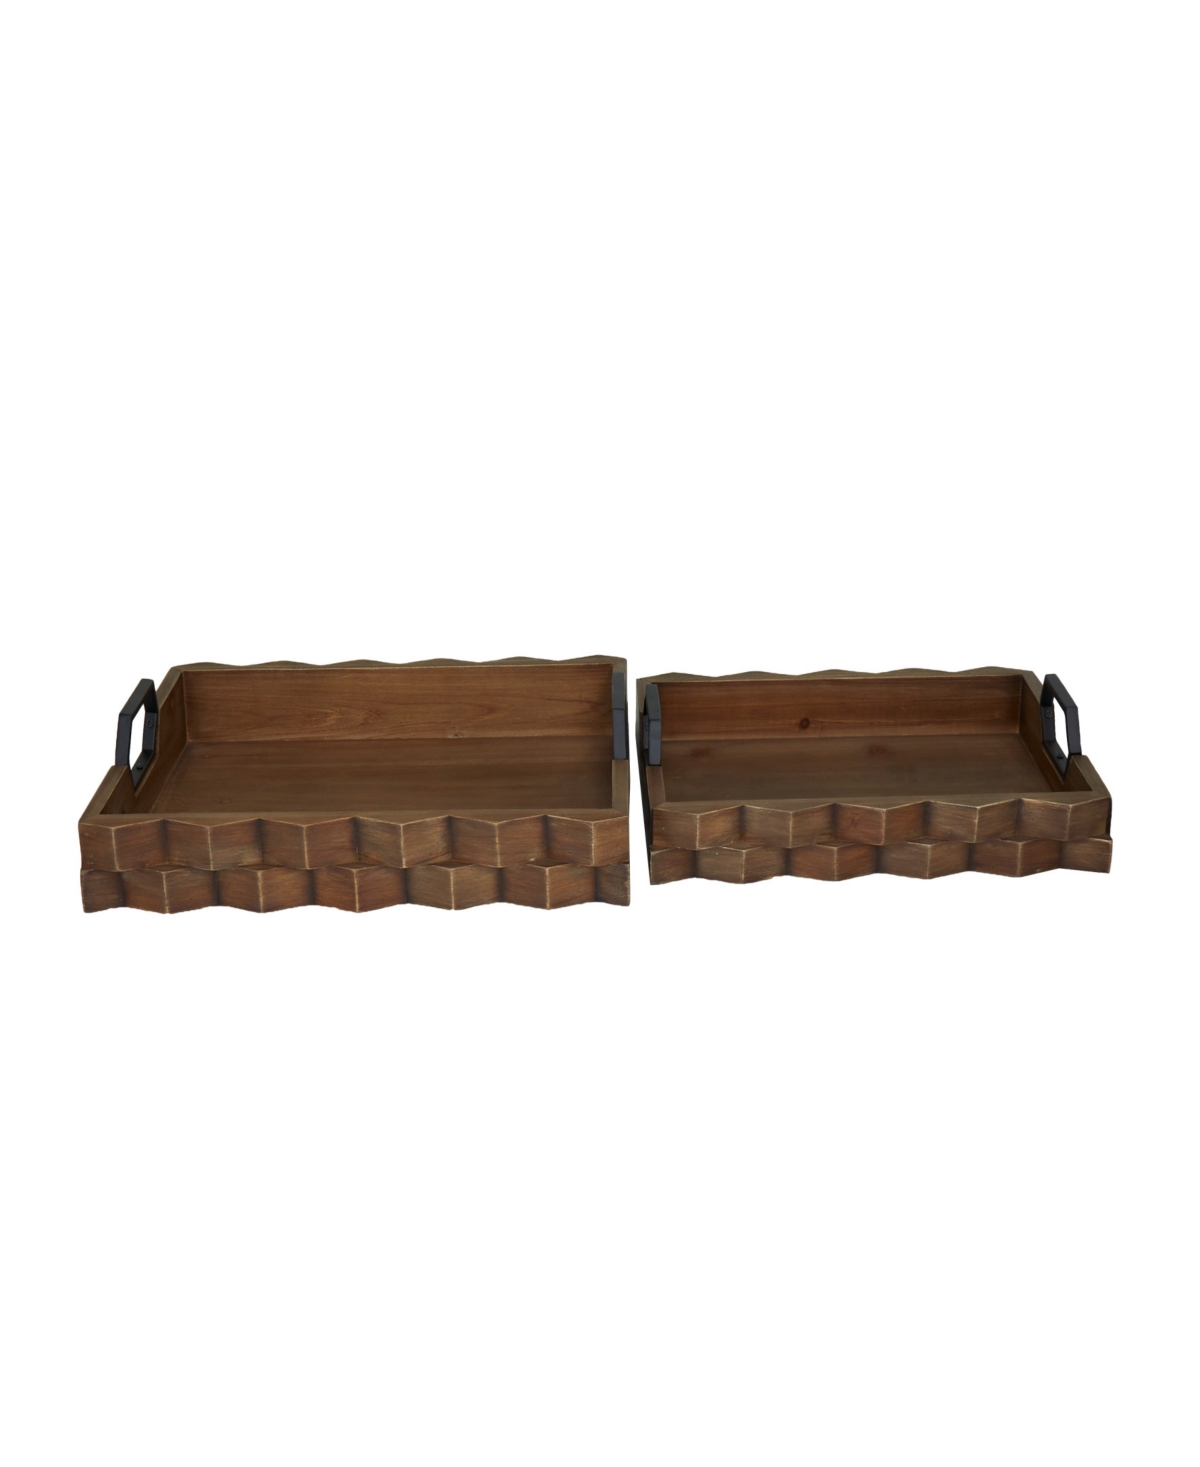 Rosemary Lane Dark Wood Tray With Metal Handles, Set Of 2, 14", 16" W In Dark Brown